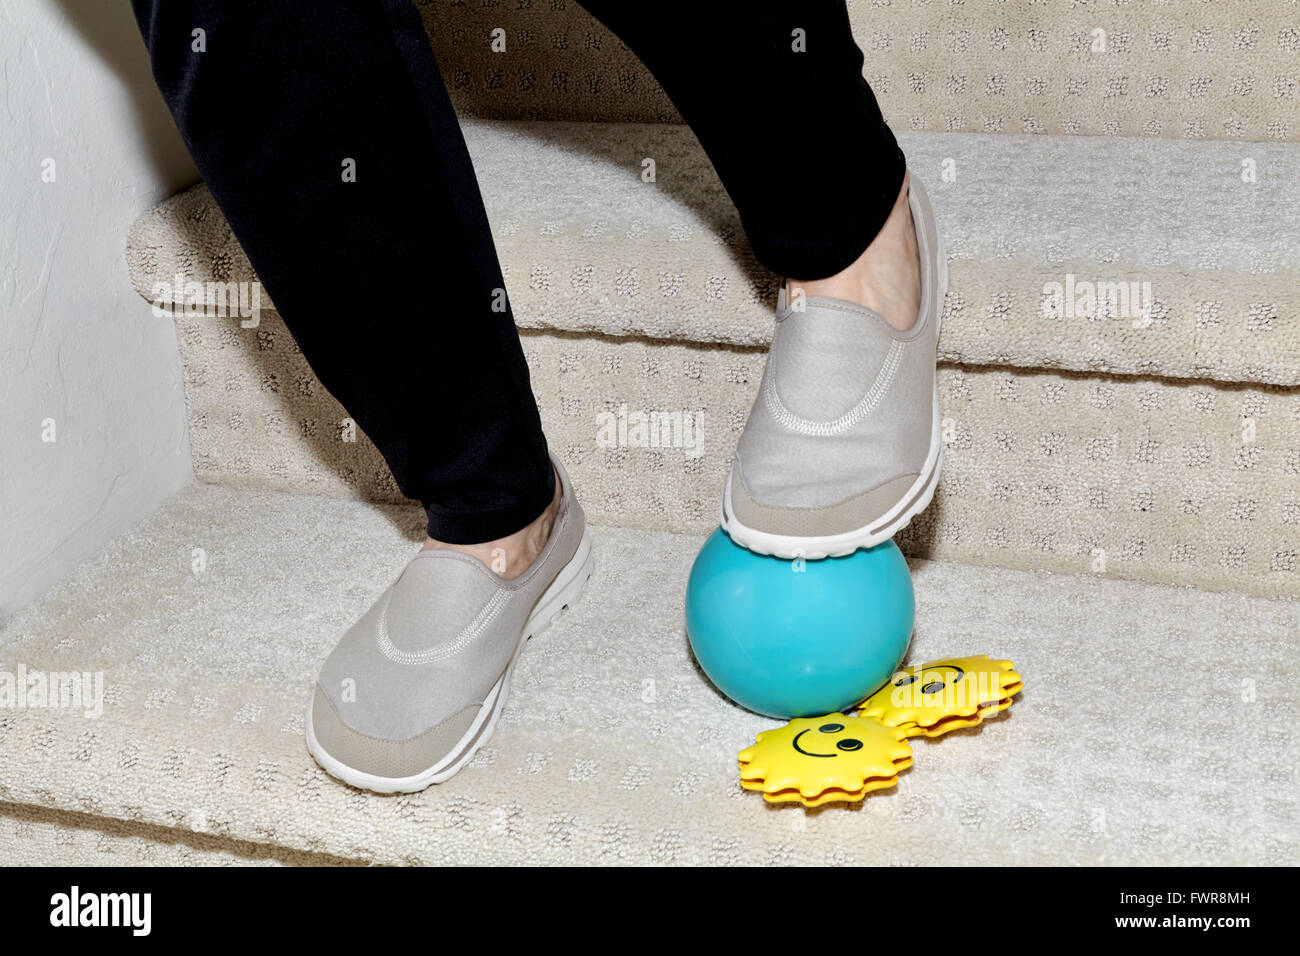 Los pies de una mujer bajando las escaleras con una pelota y un juguete childs en la manera de causar un accidente Foto de stock